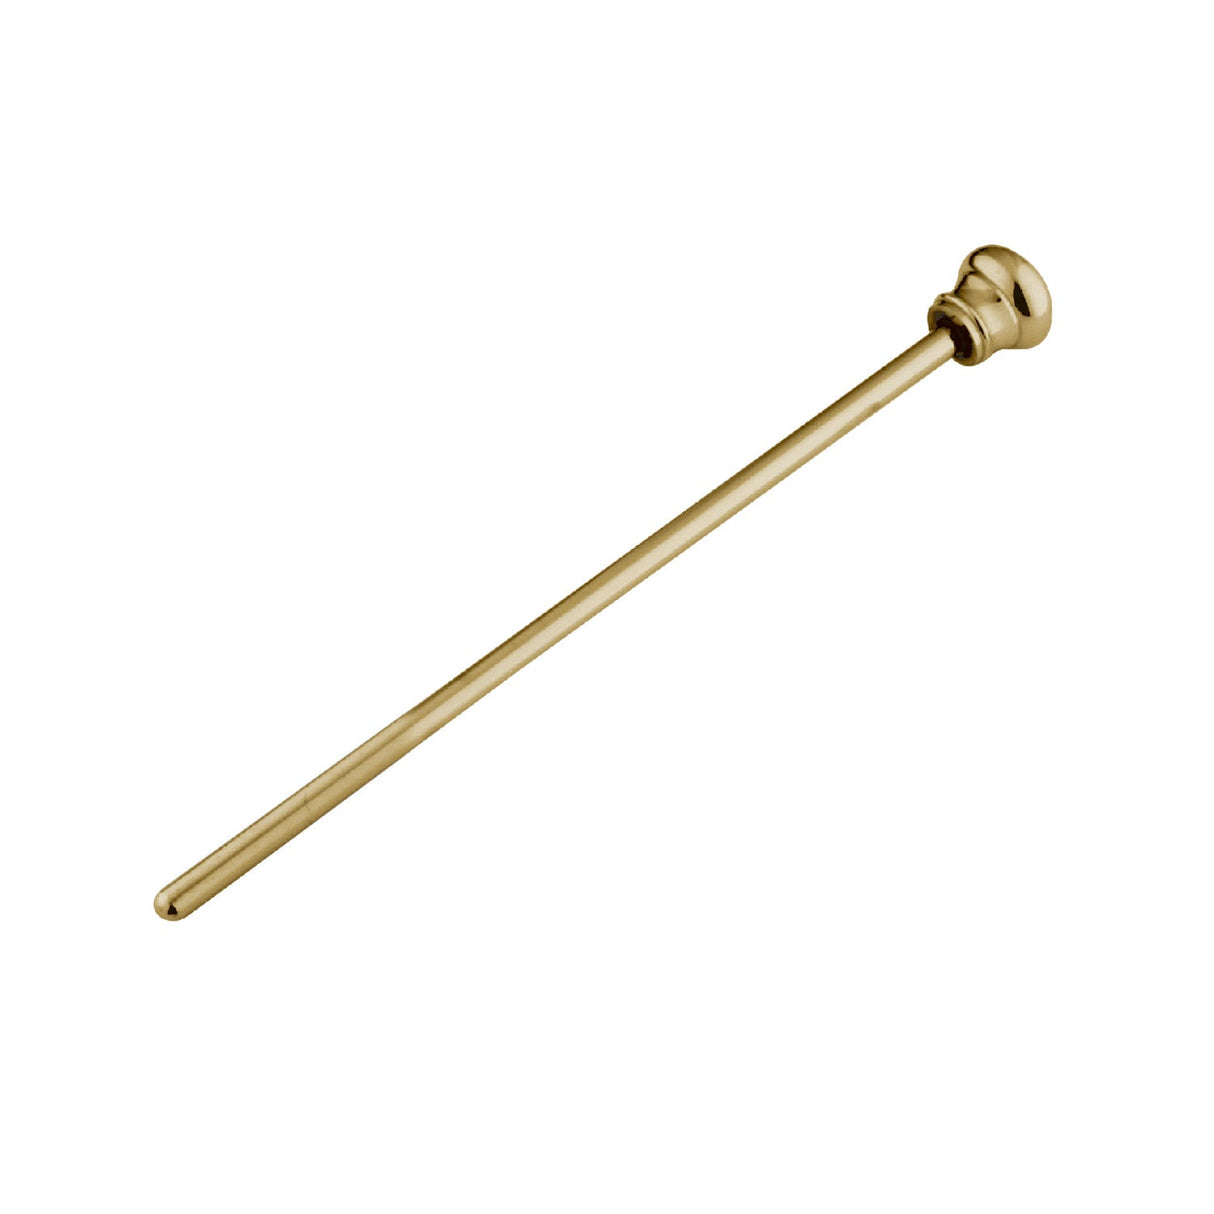 KBPR952 Brass Pop-Up Rod, Polished Brass